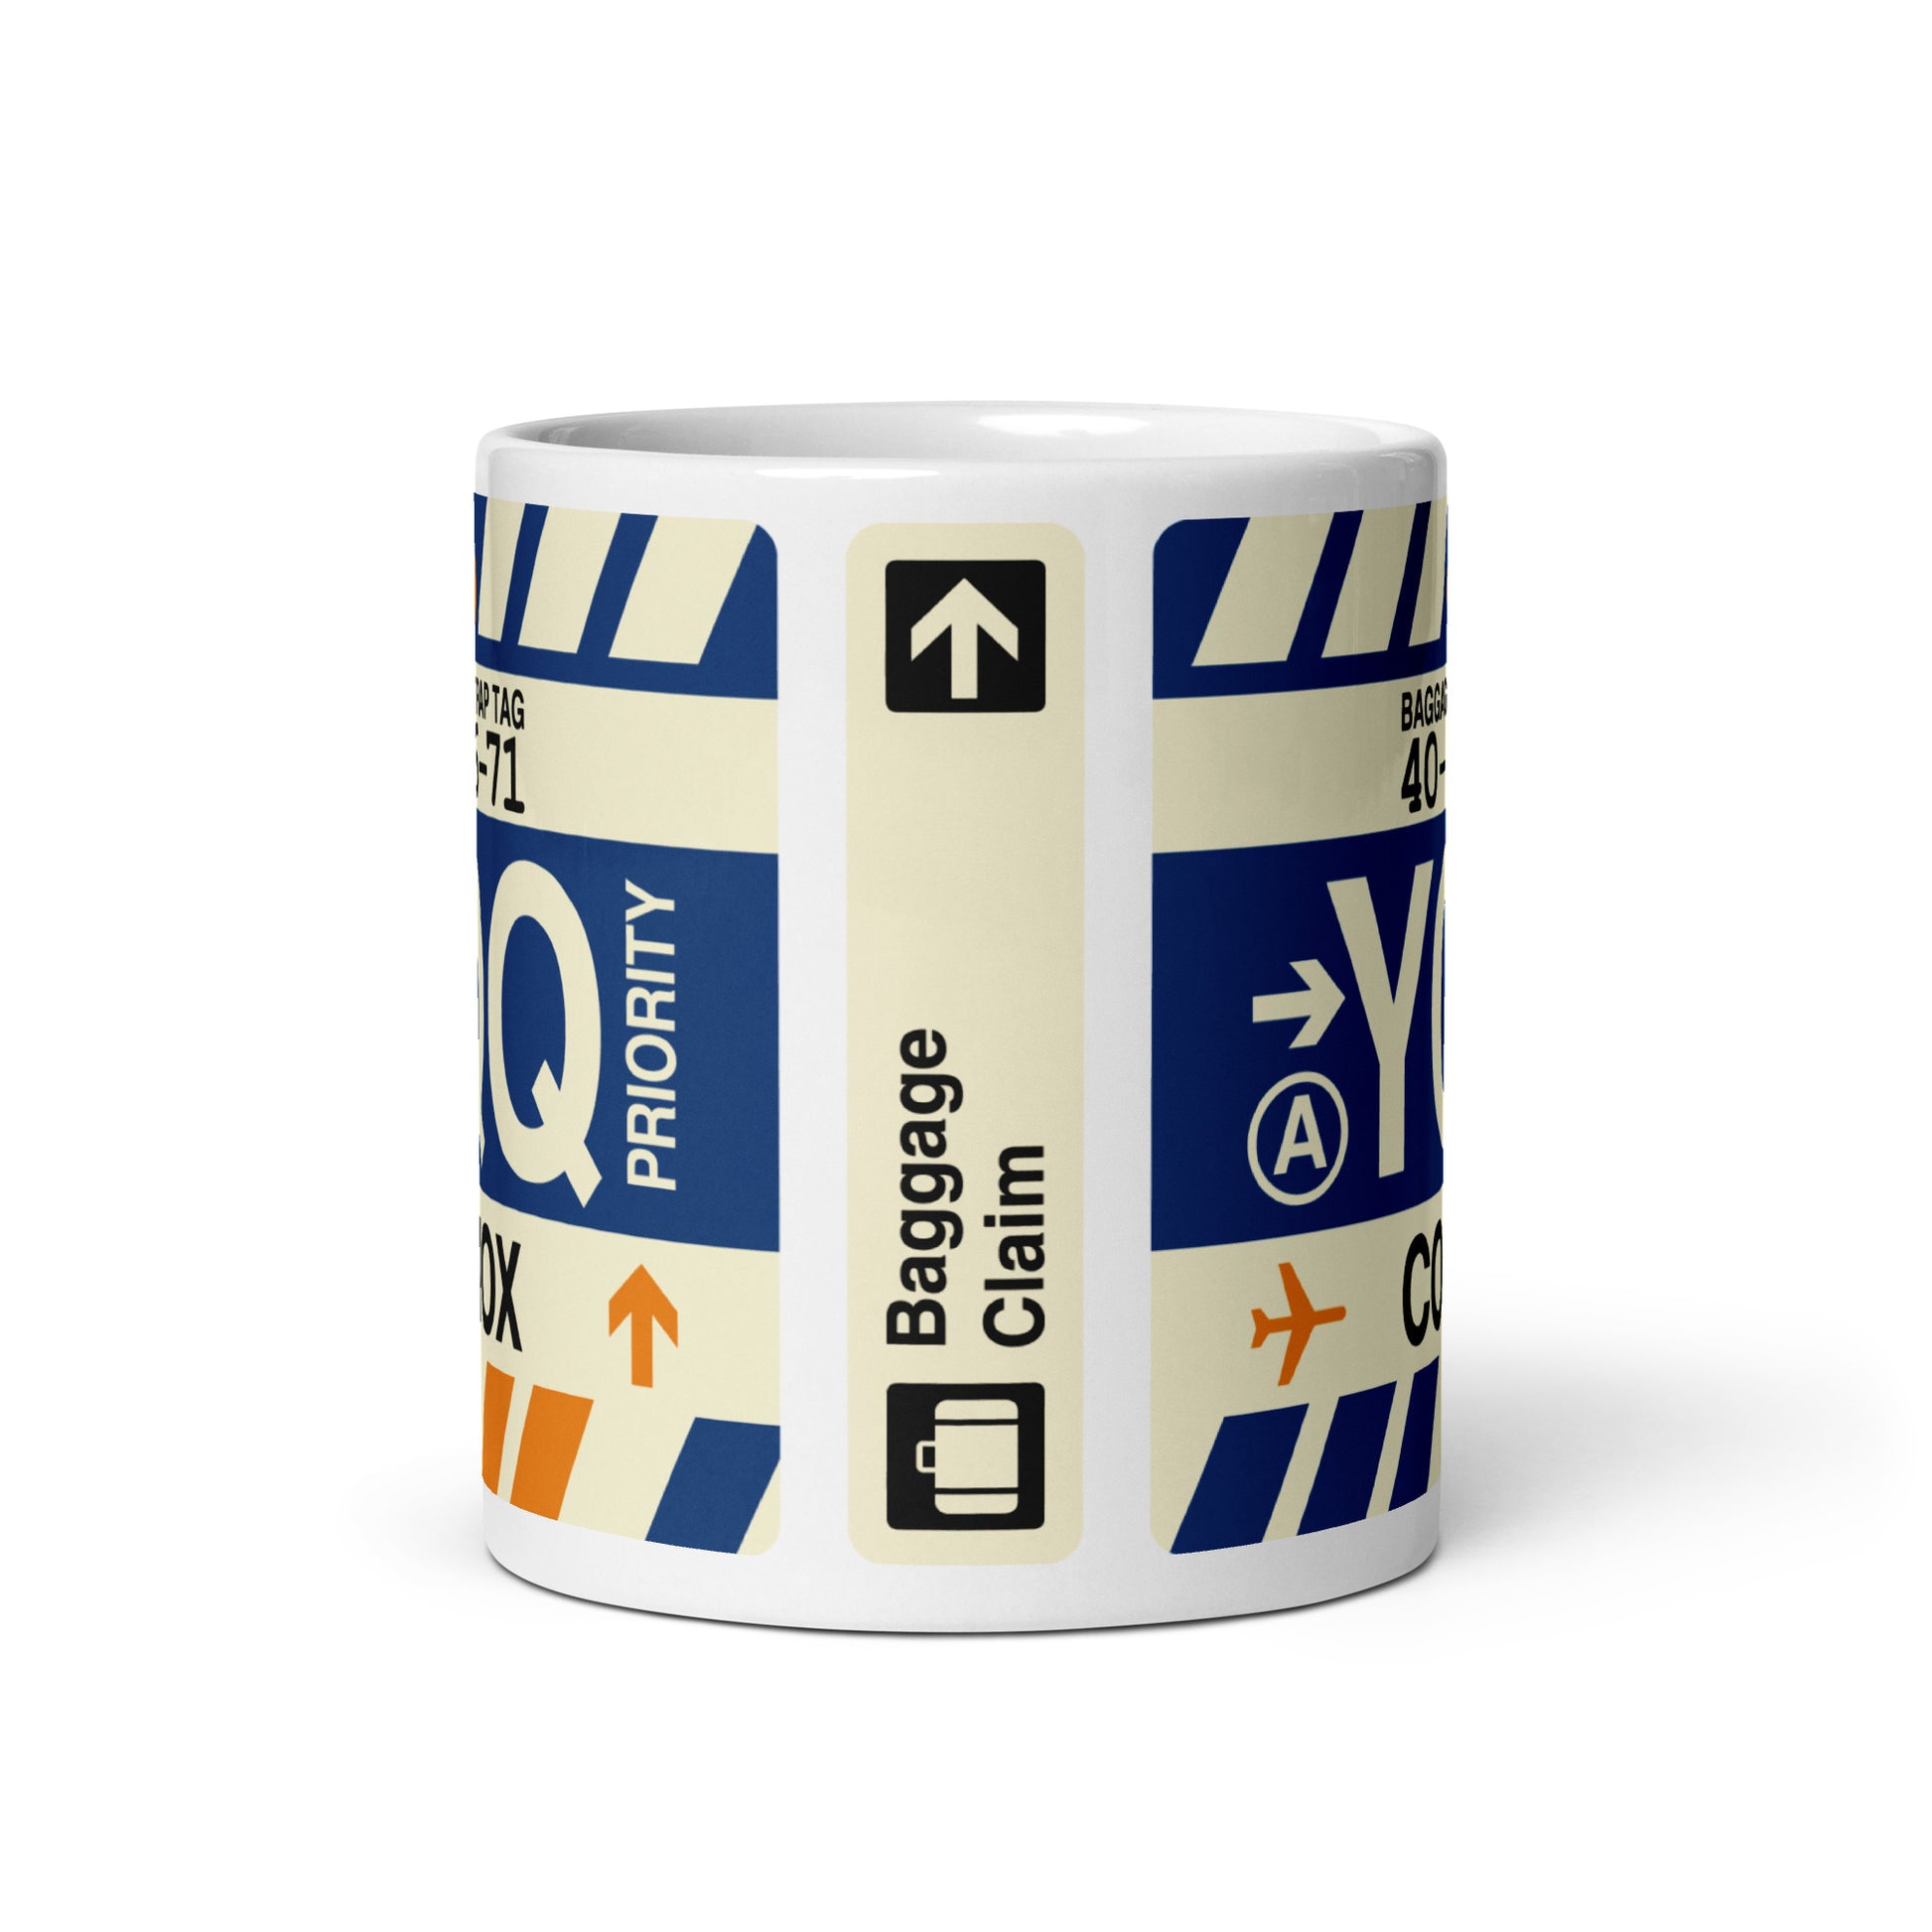 Travel-Themed Coffee Mug • YQQ Comox • YHM Designs - Image 02